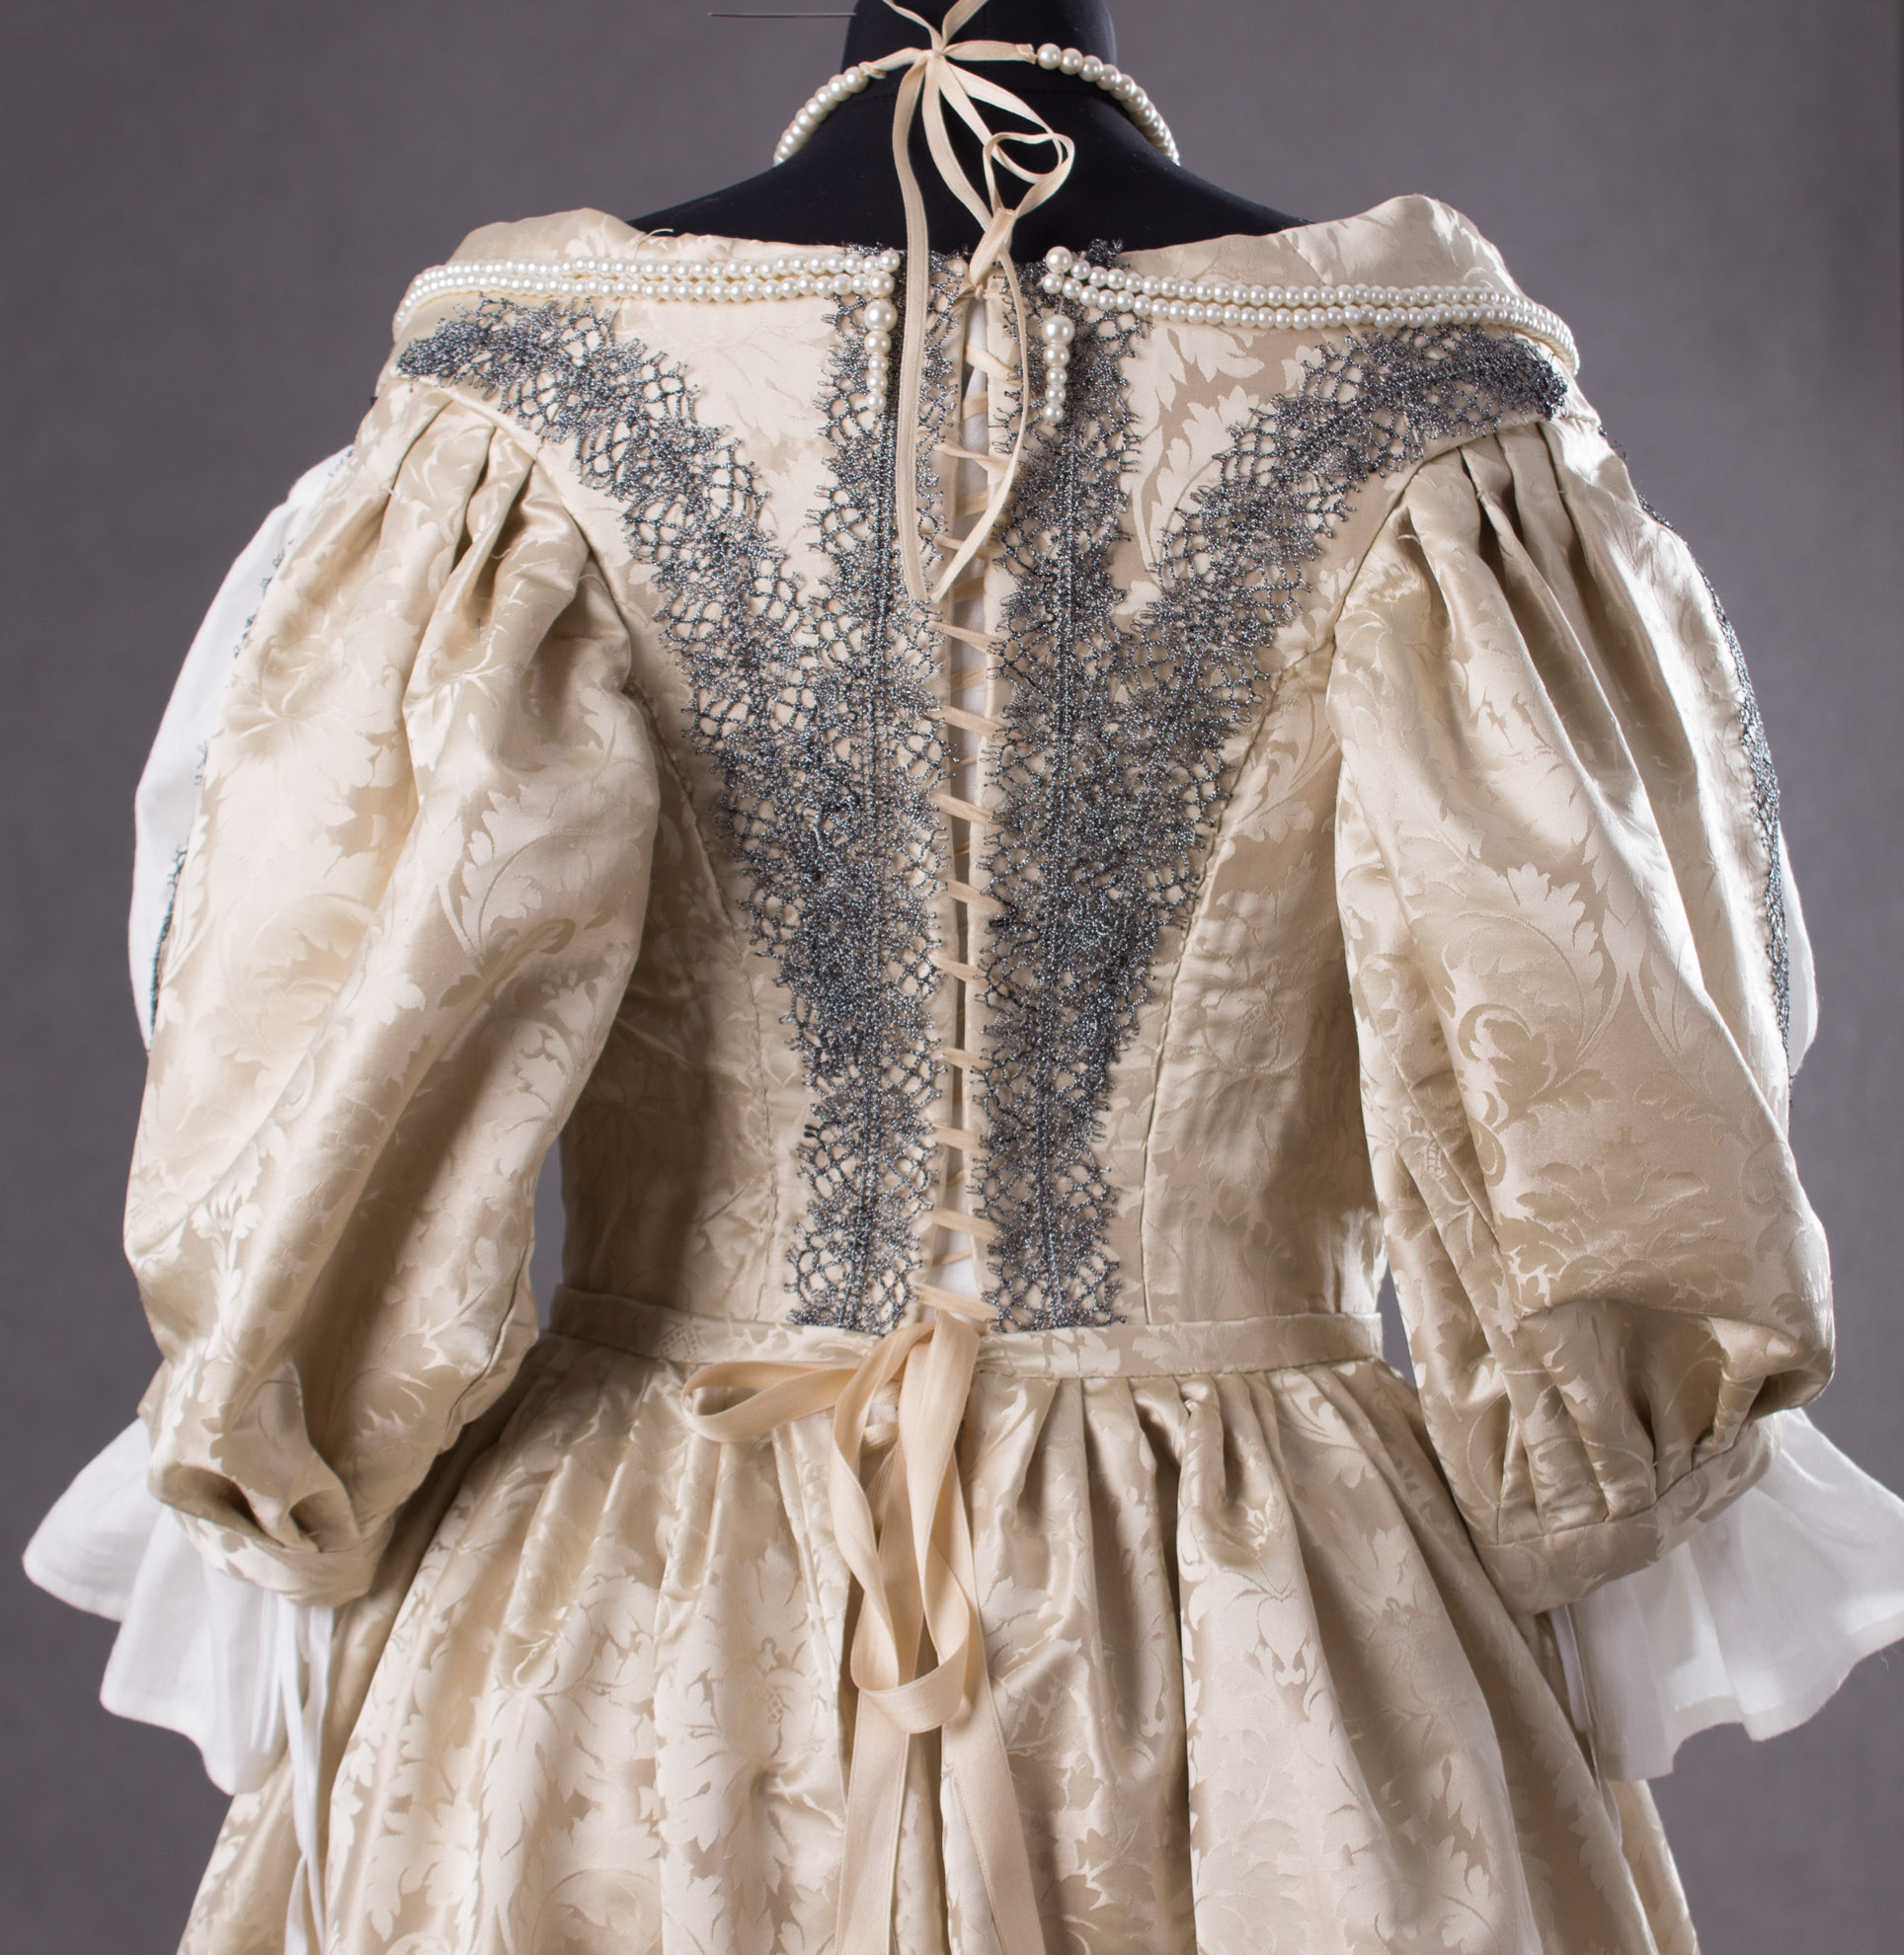 suknia-z-adamaszku-jedwabnego-1660-7-of-8